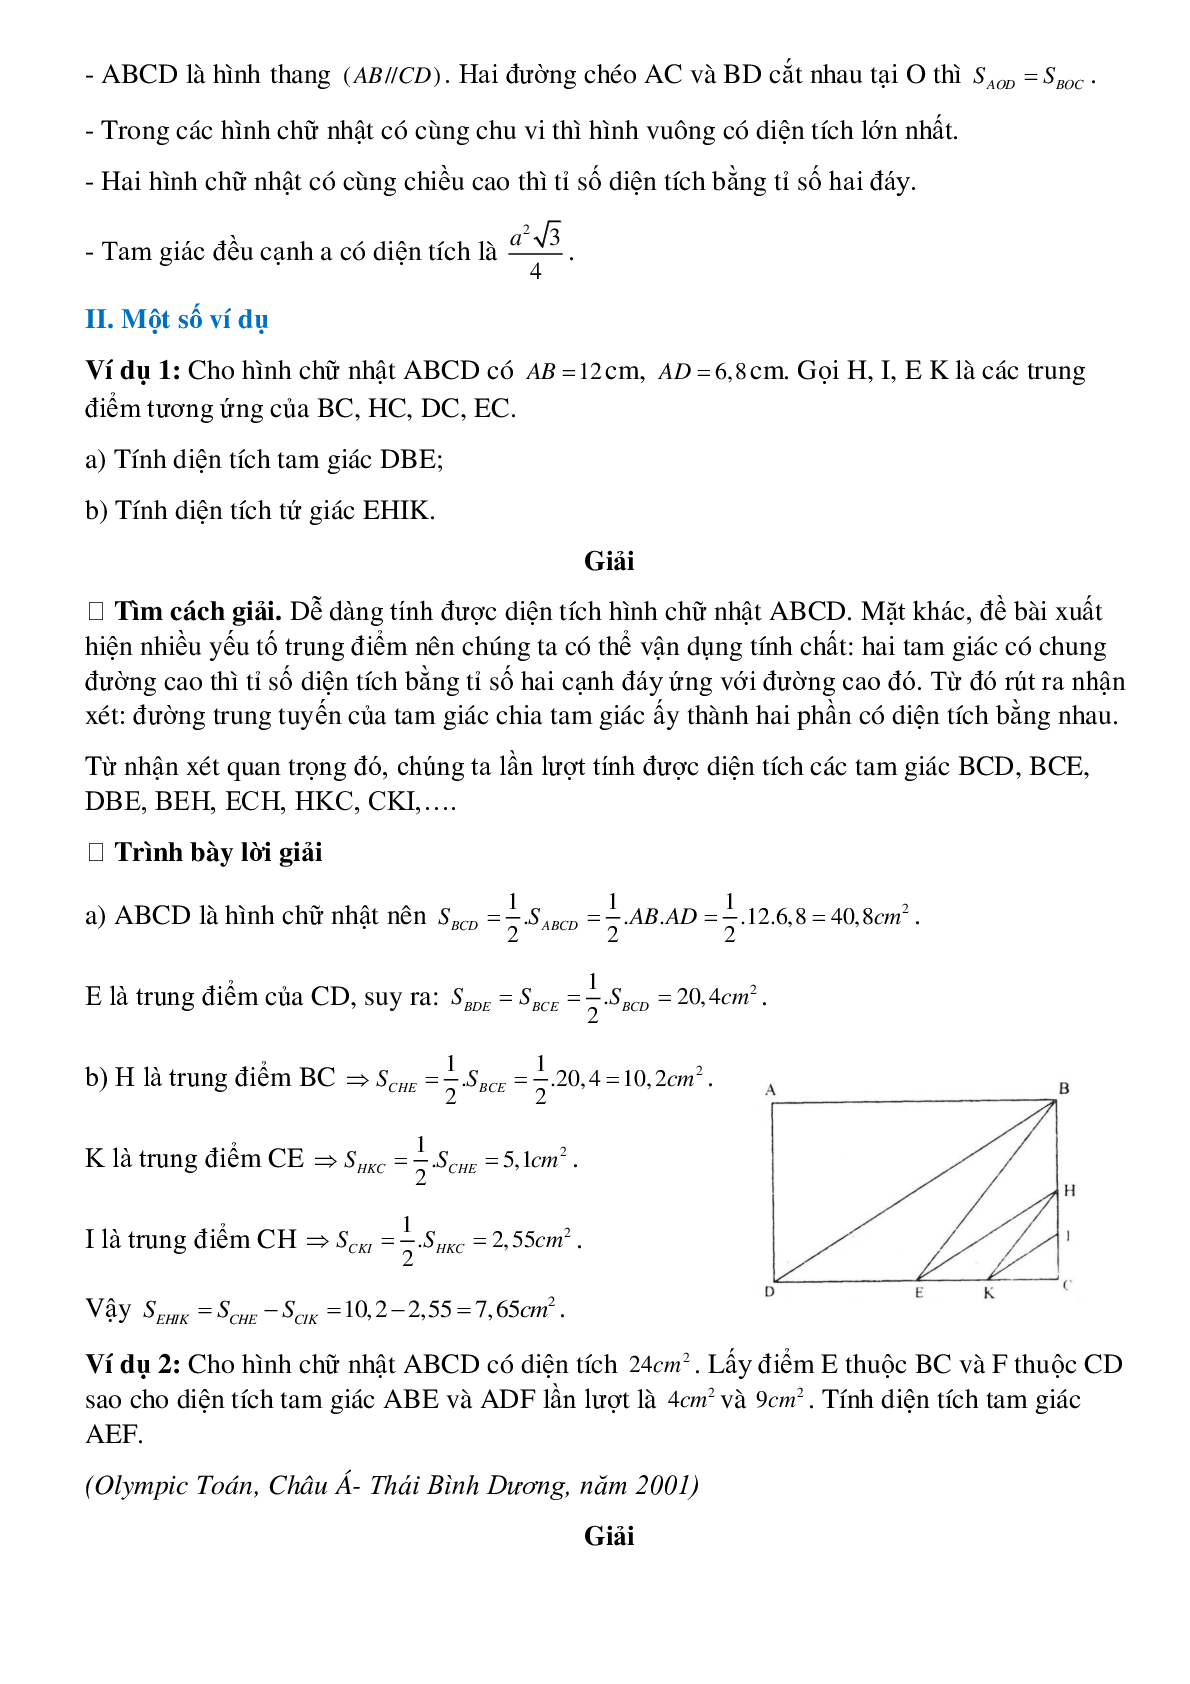 Diện tích đa giác (trang 2)